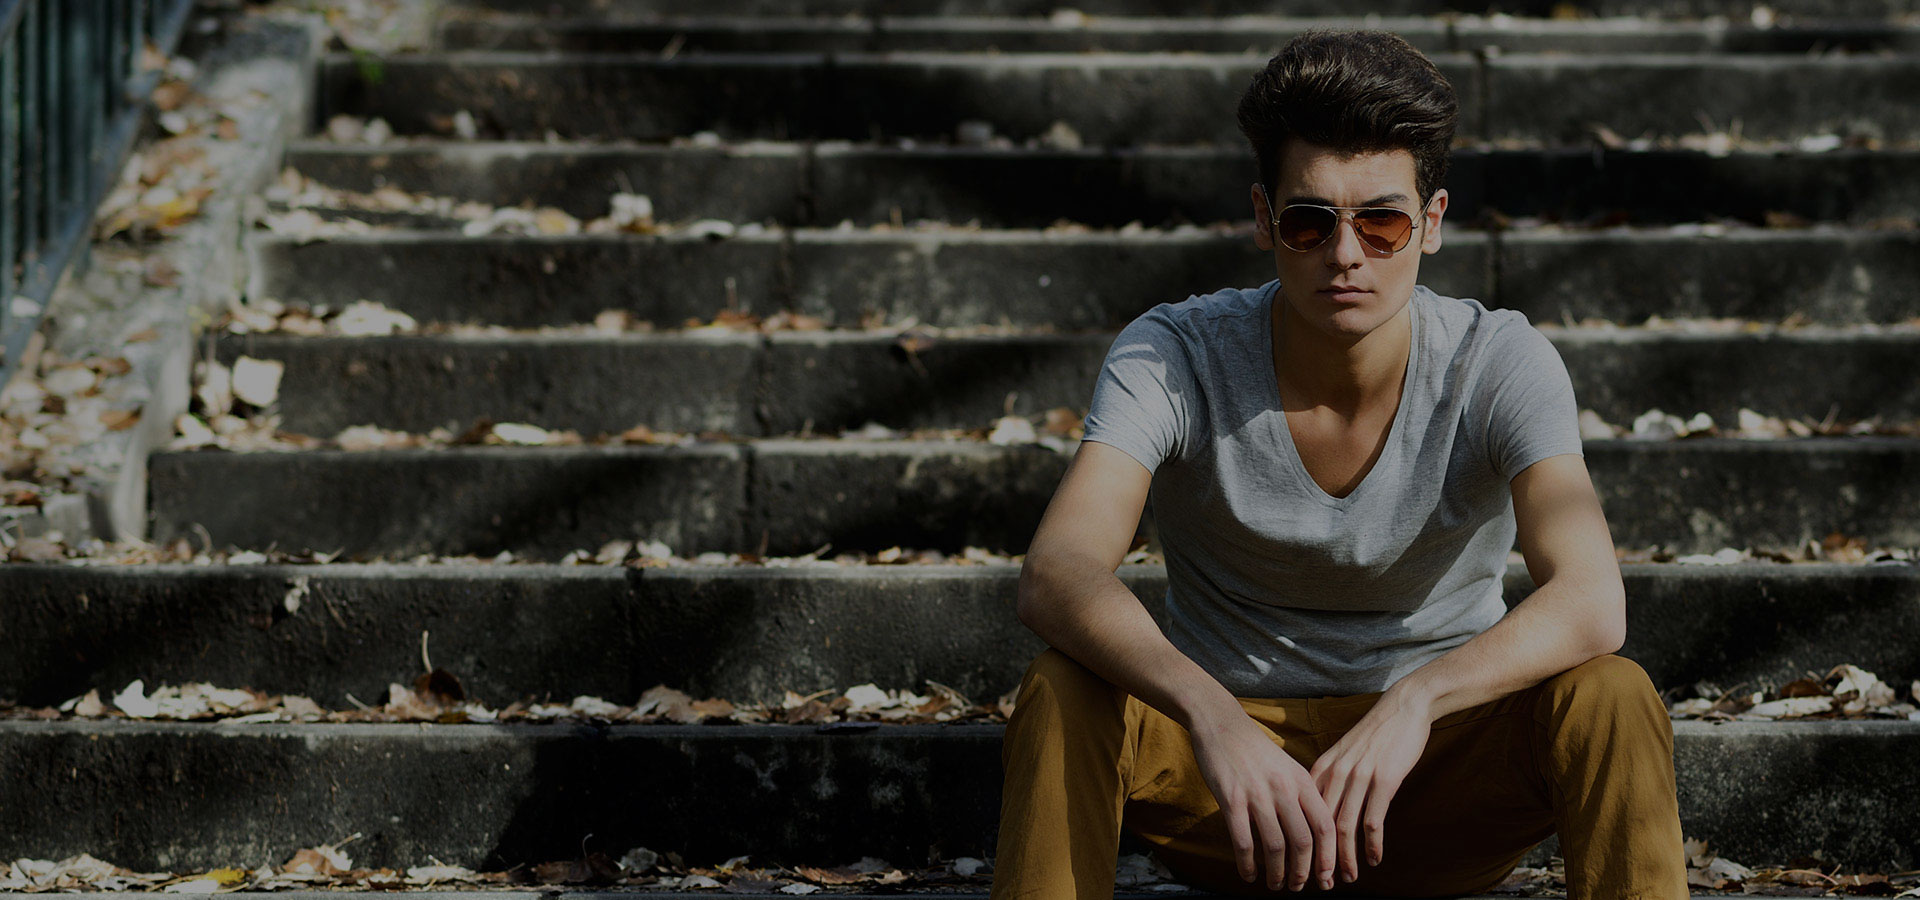 Jongeman met trendy herenkapsel in vintage style buiten zittend met zonnebril op brede stenen trap.